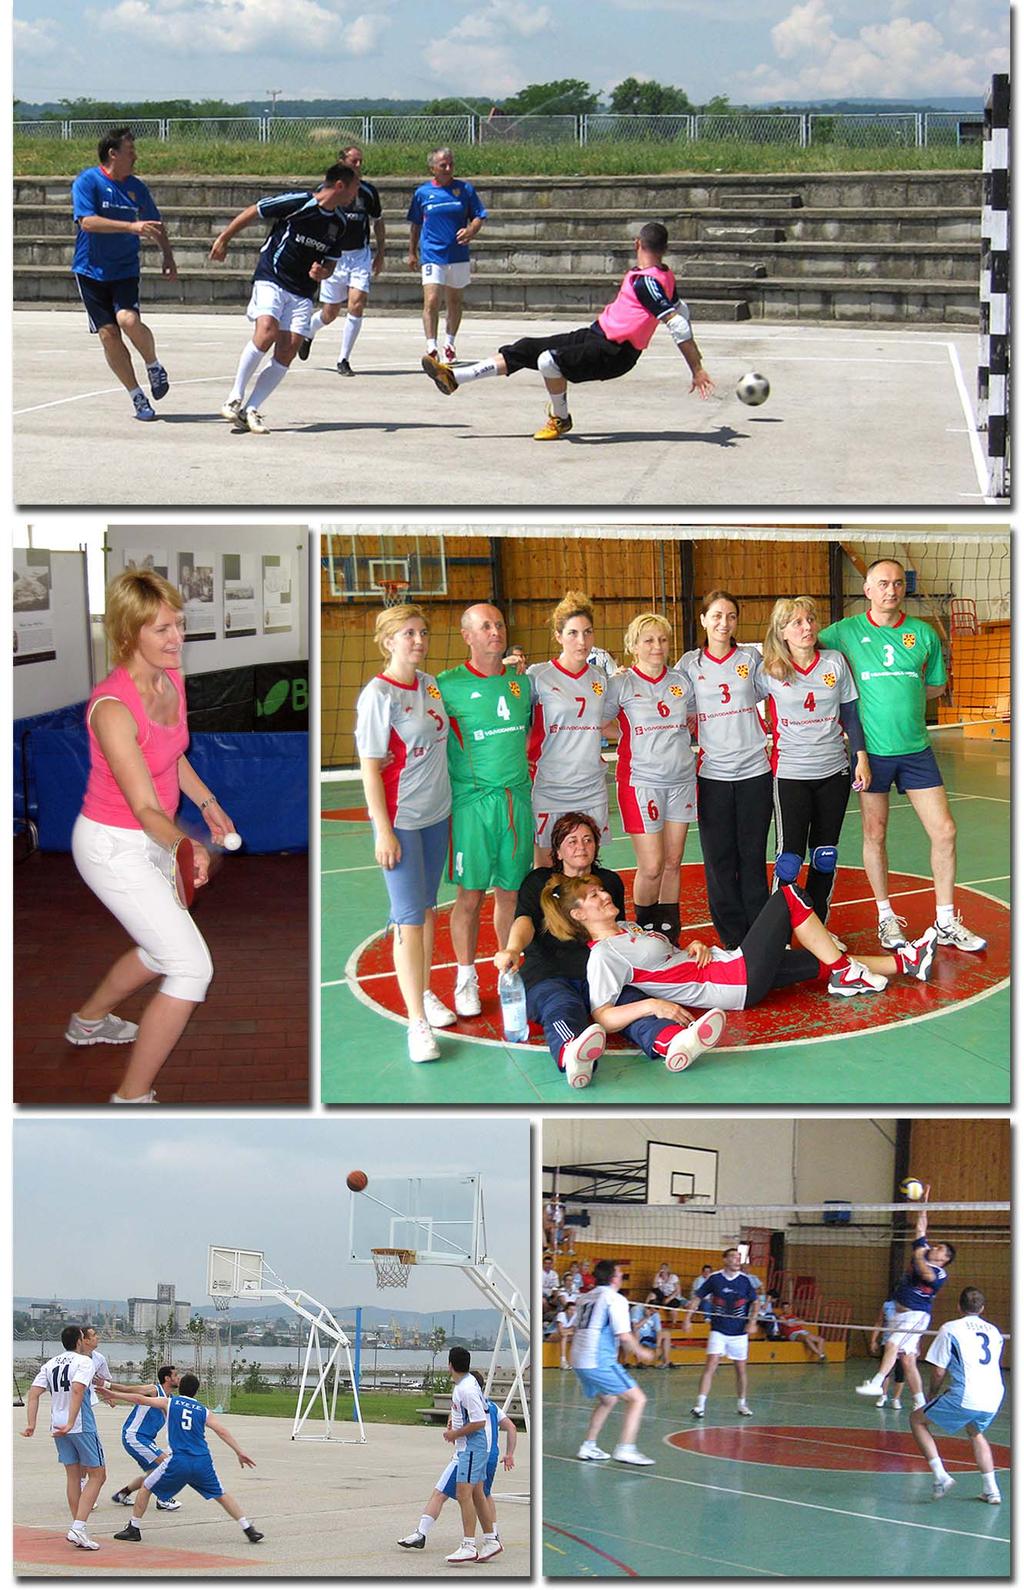 Tradicionalni radno-sportski susreti "Bofosijada 2011" održani su u Kladovu od 1.